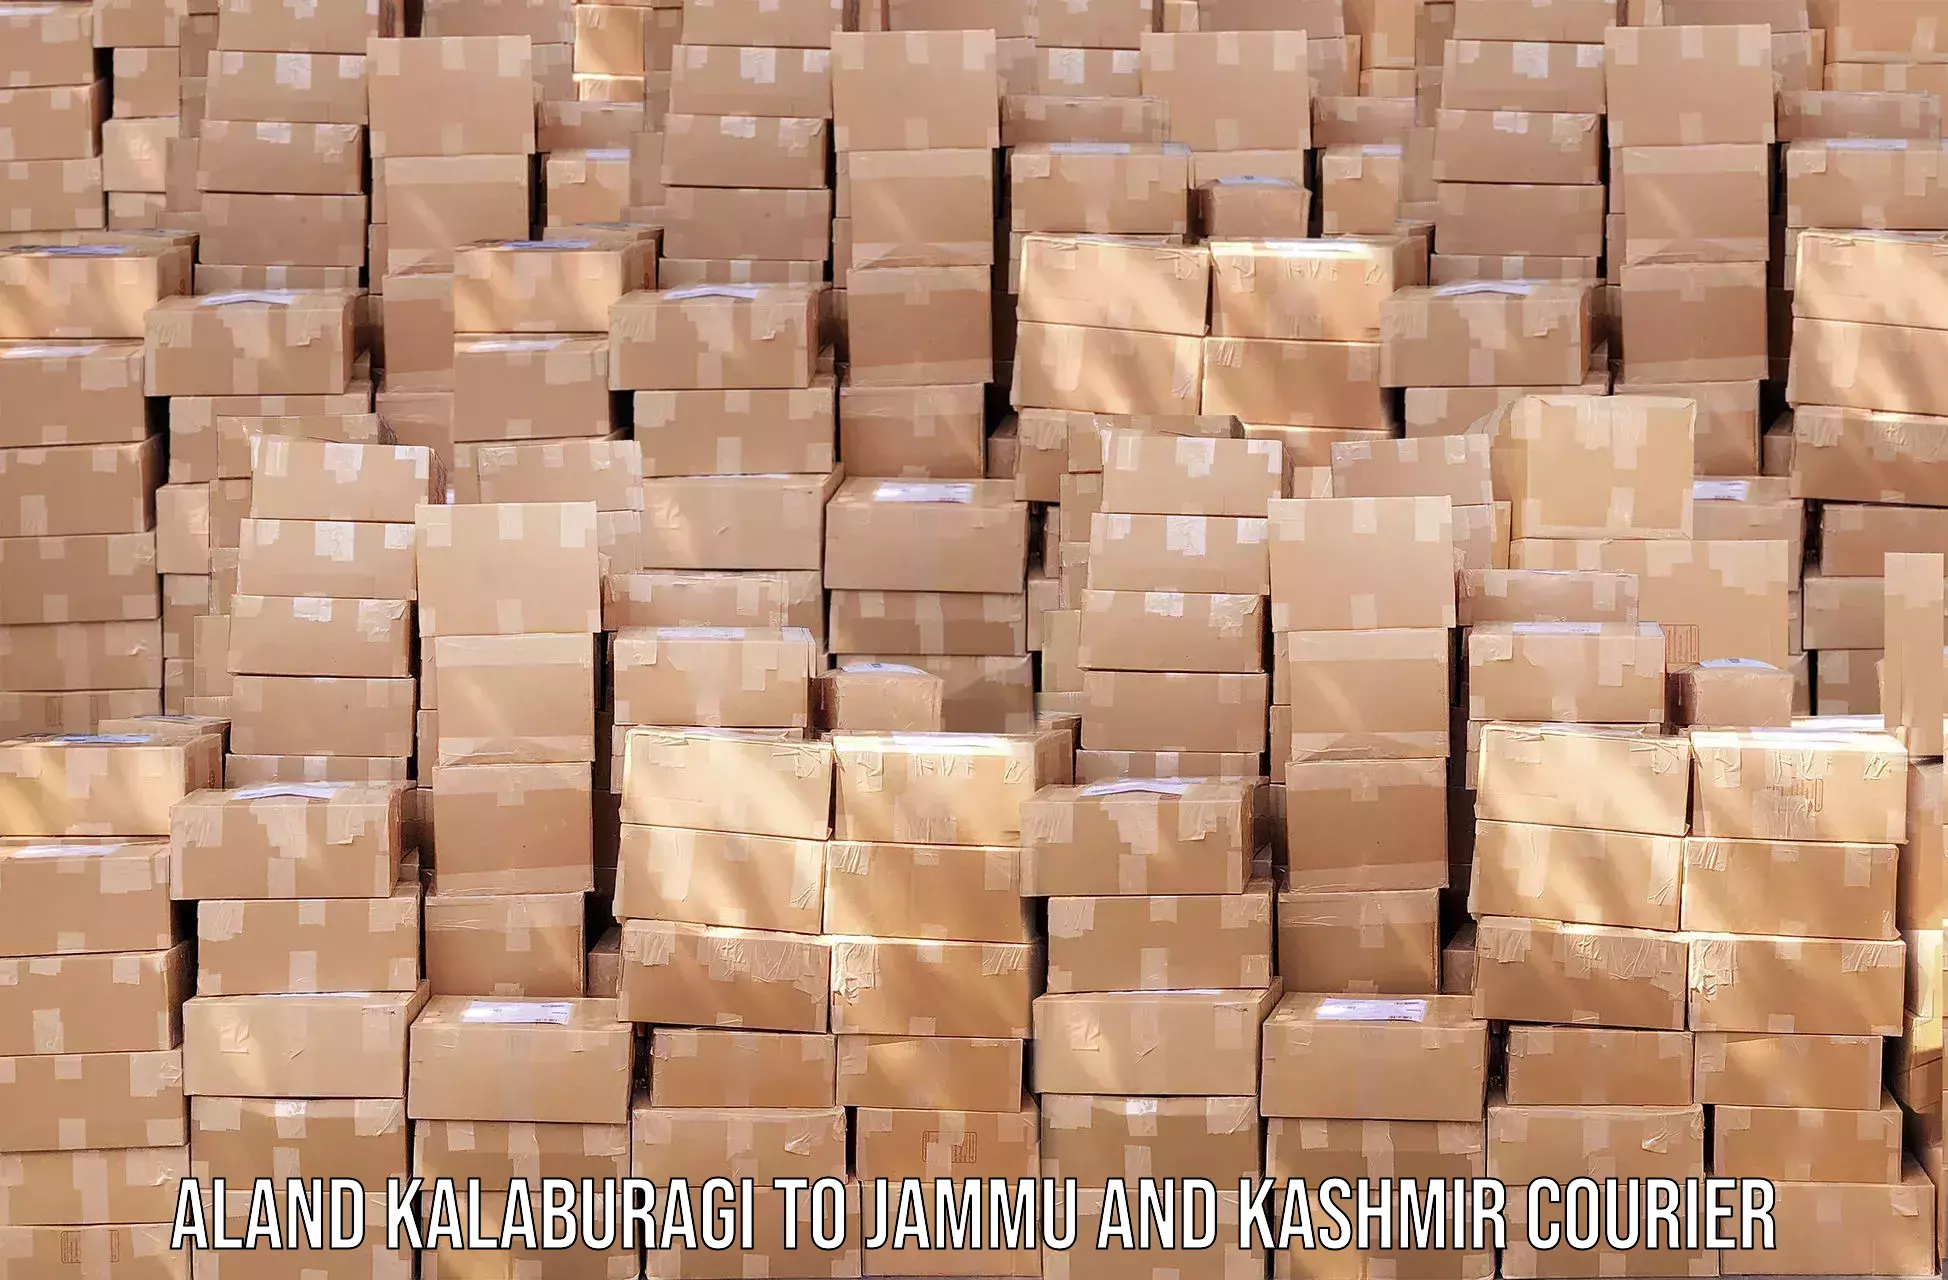 Holiday shipping services Aland Kalaburagi to Jammu and Kashmir